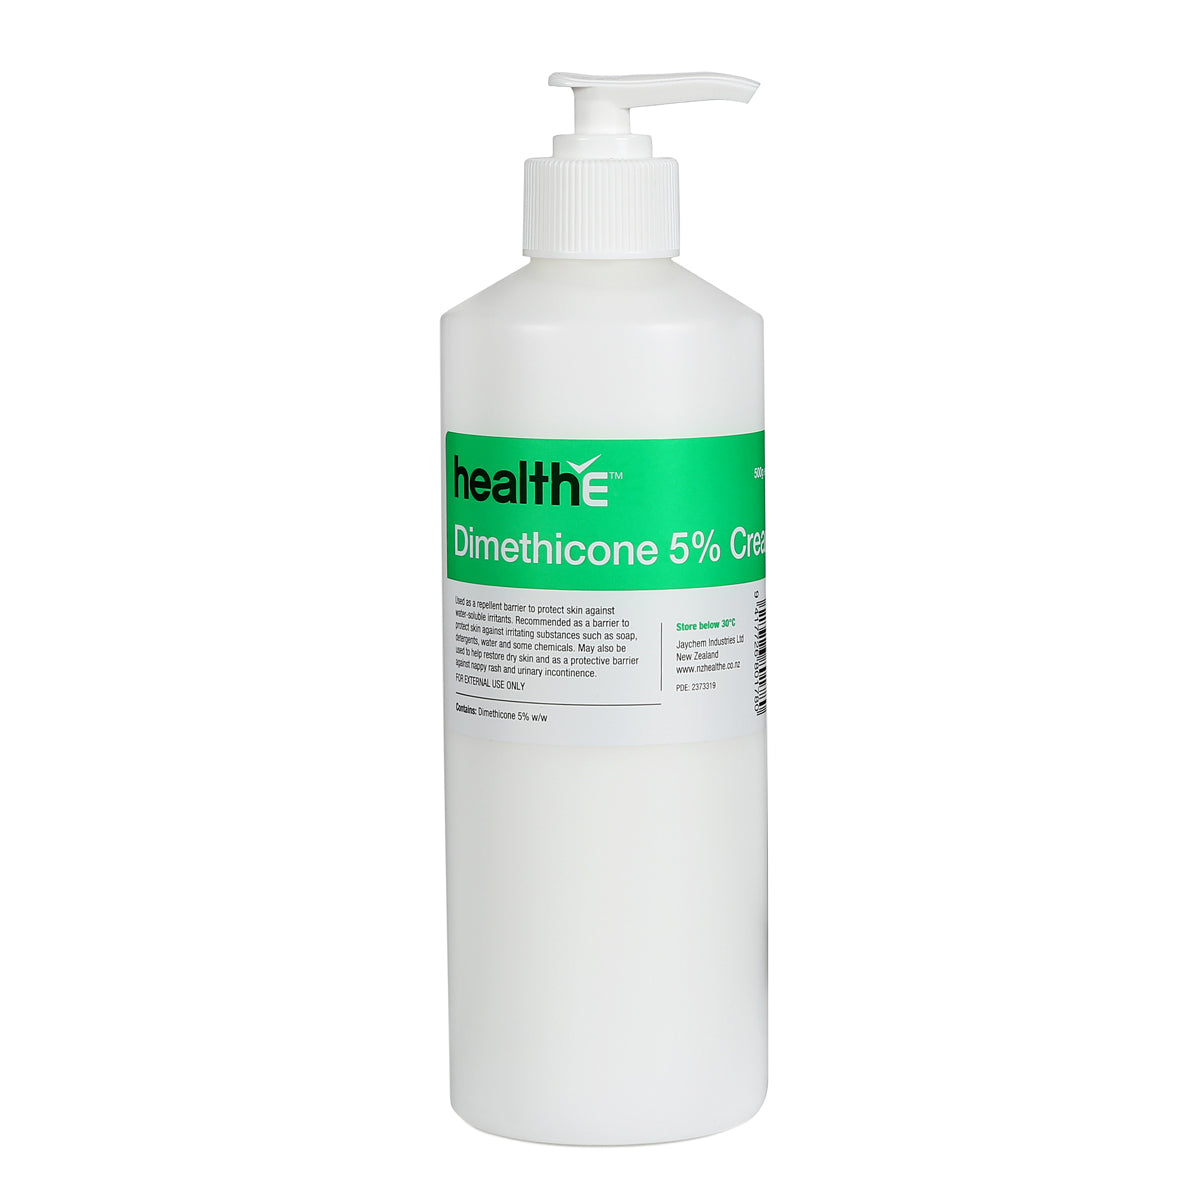 healthE Dimethicone 5% Cream - Net Pharmacy